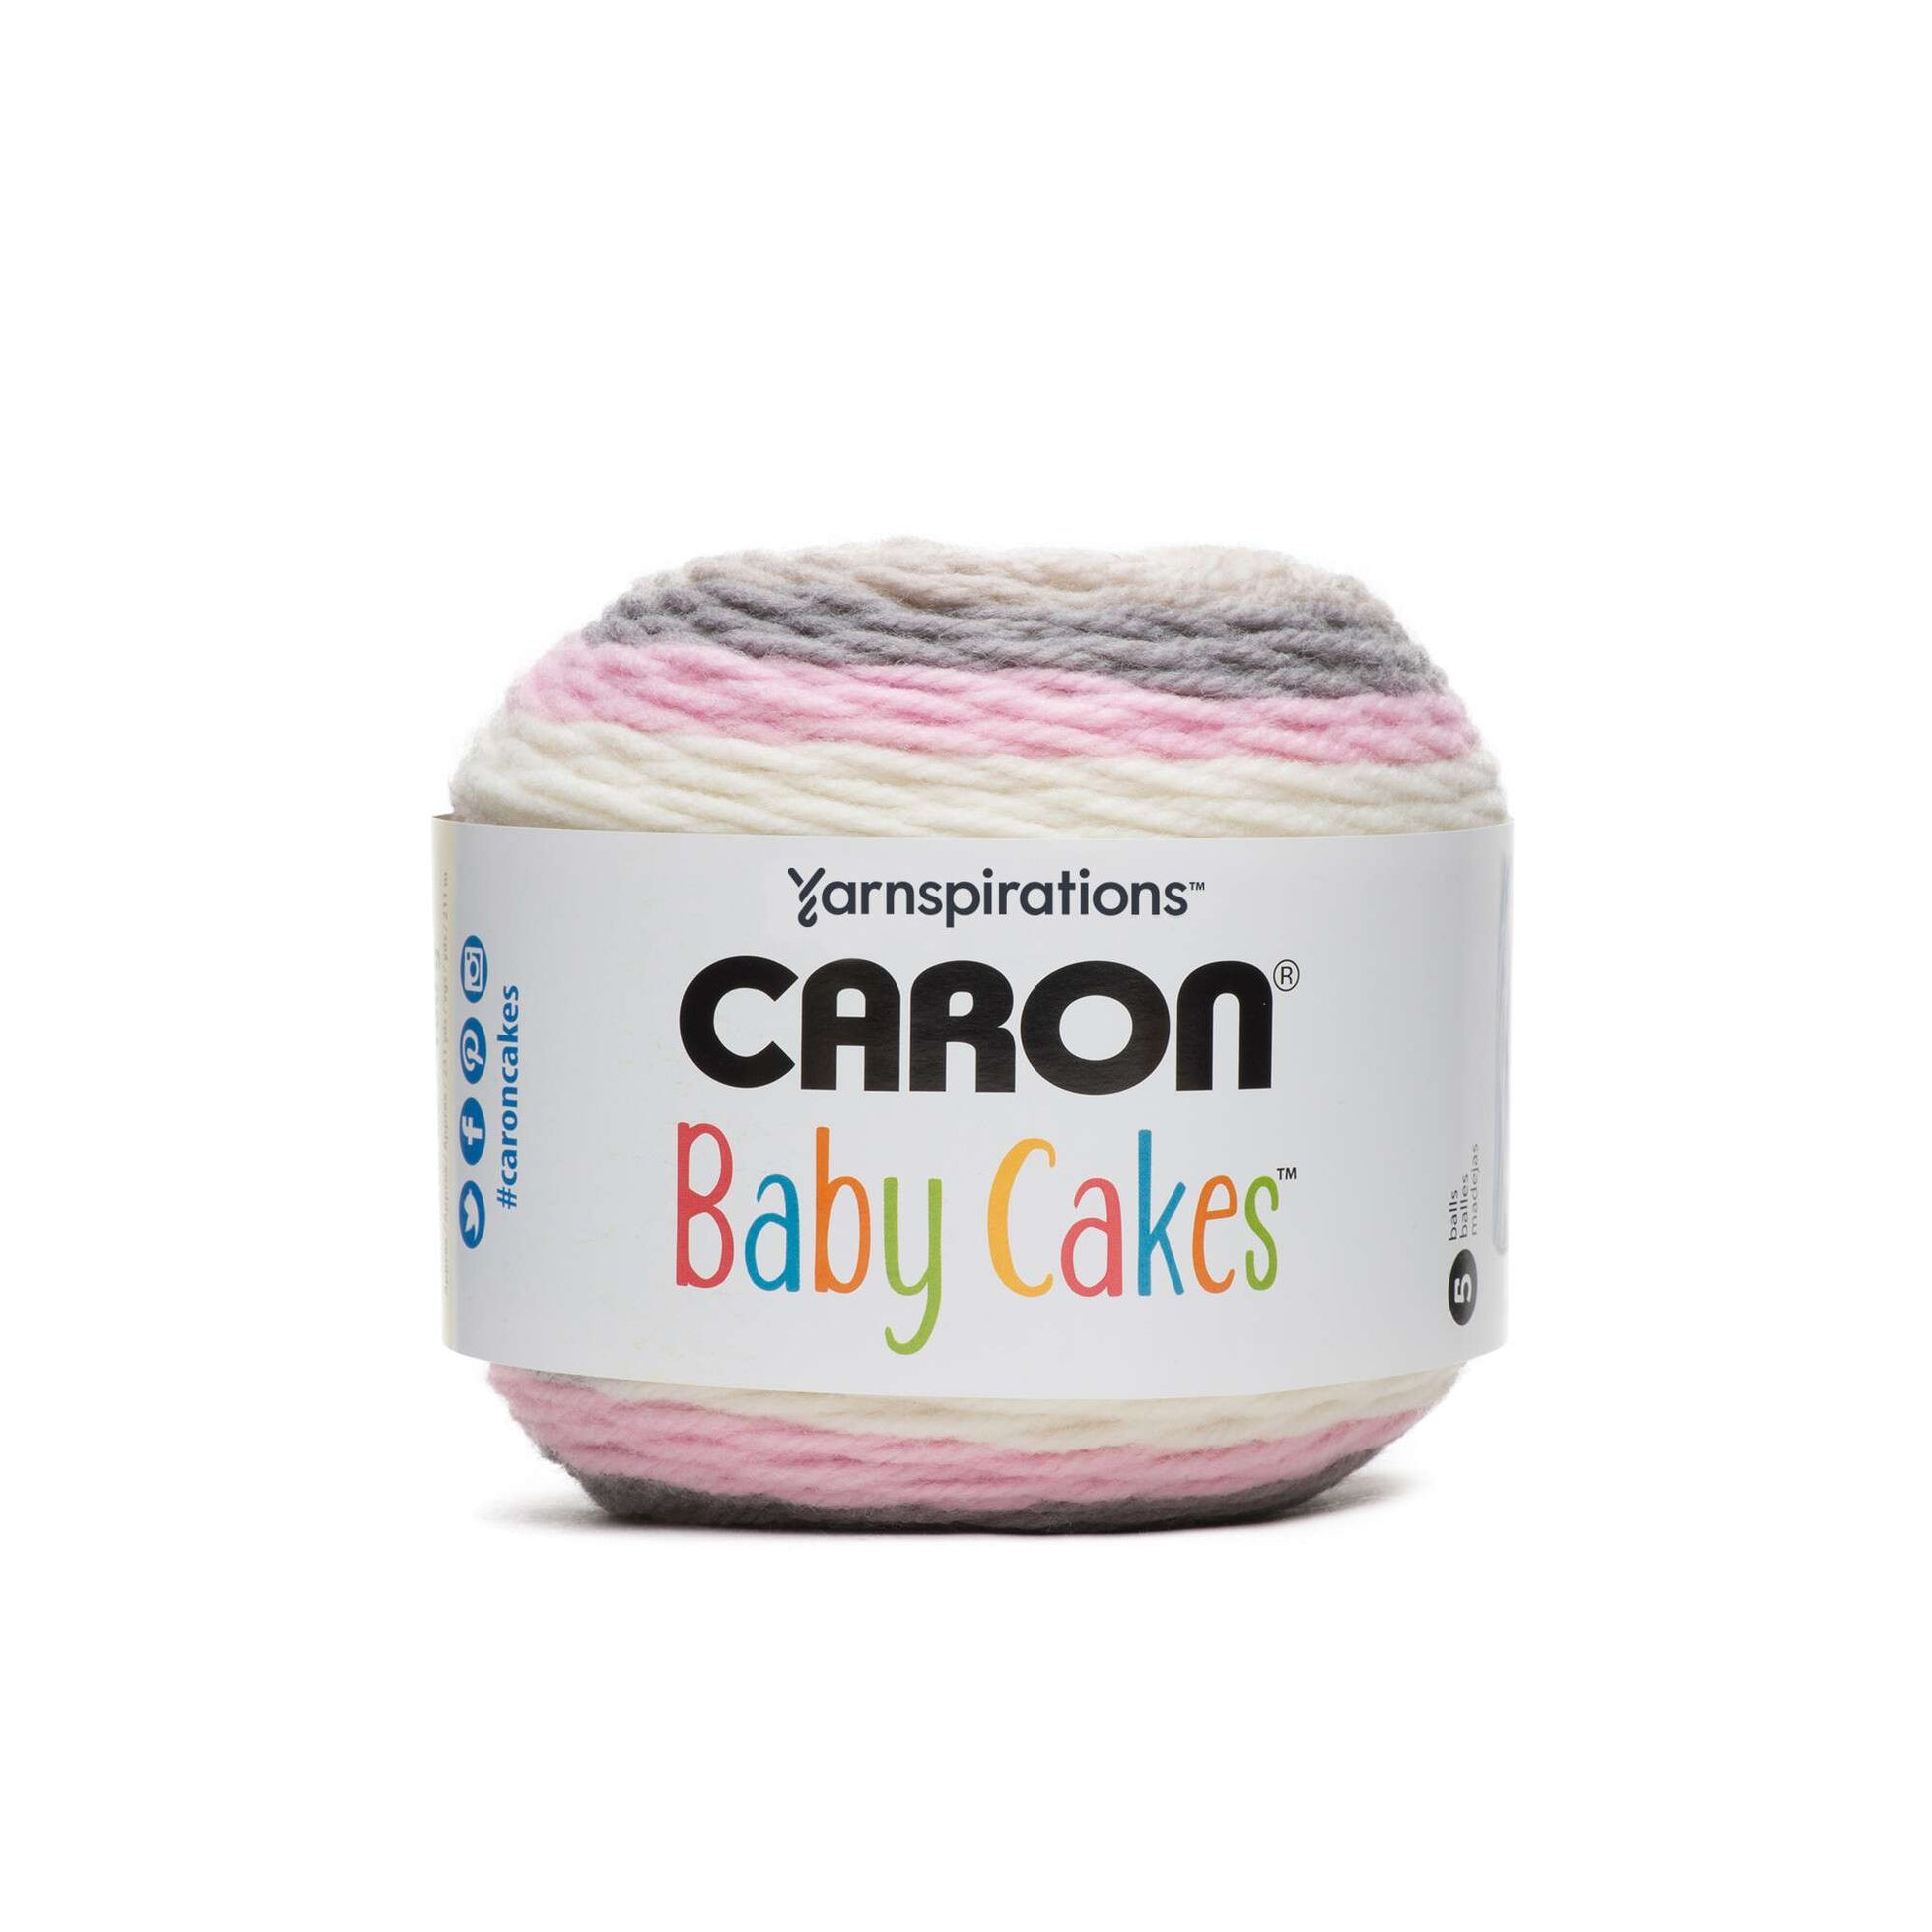 Caron® Baby Cakes™ Yarn in Petals, 8.5